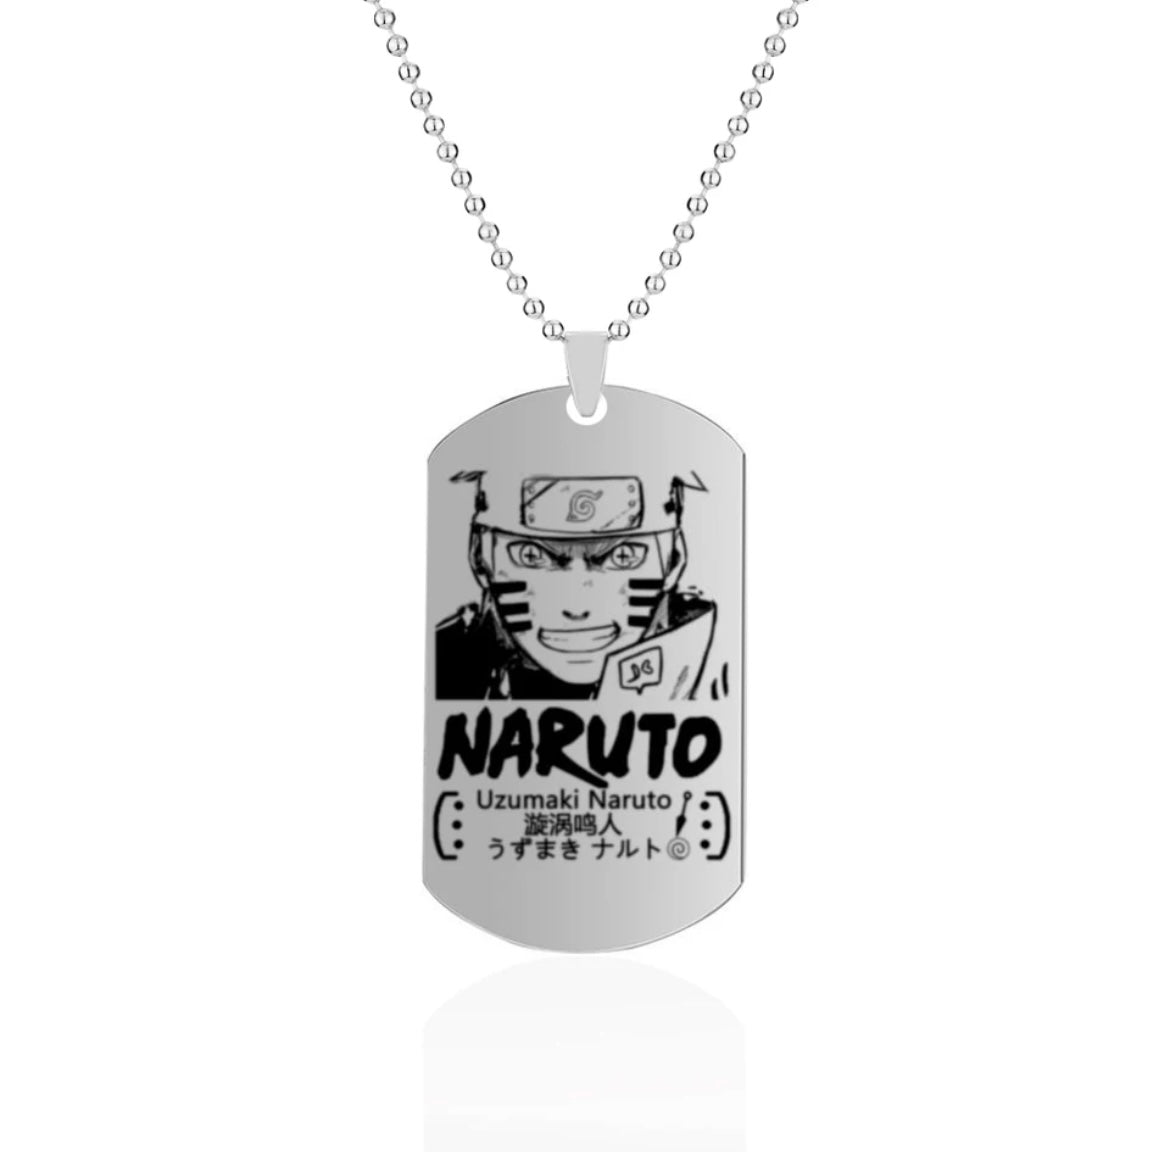 Naruto necklaces